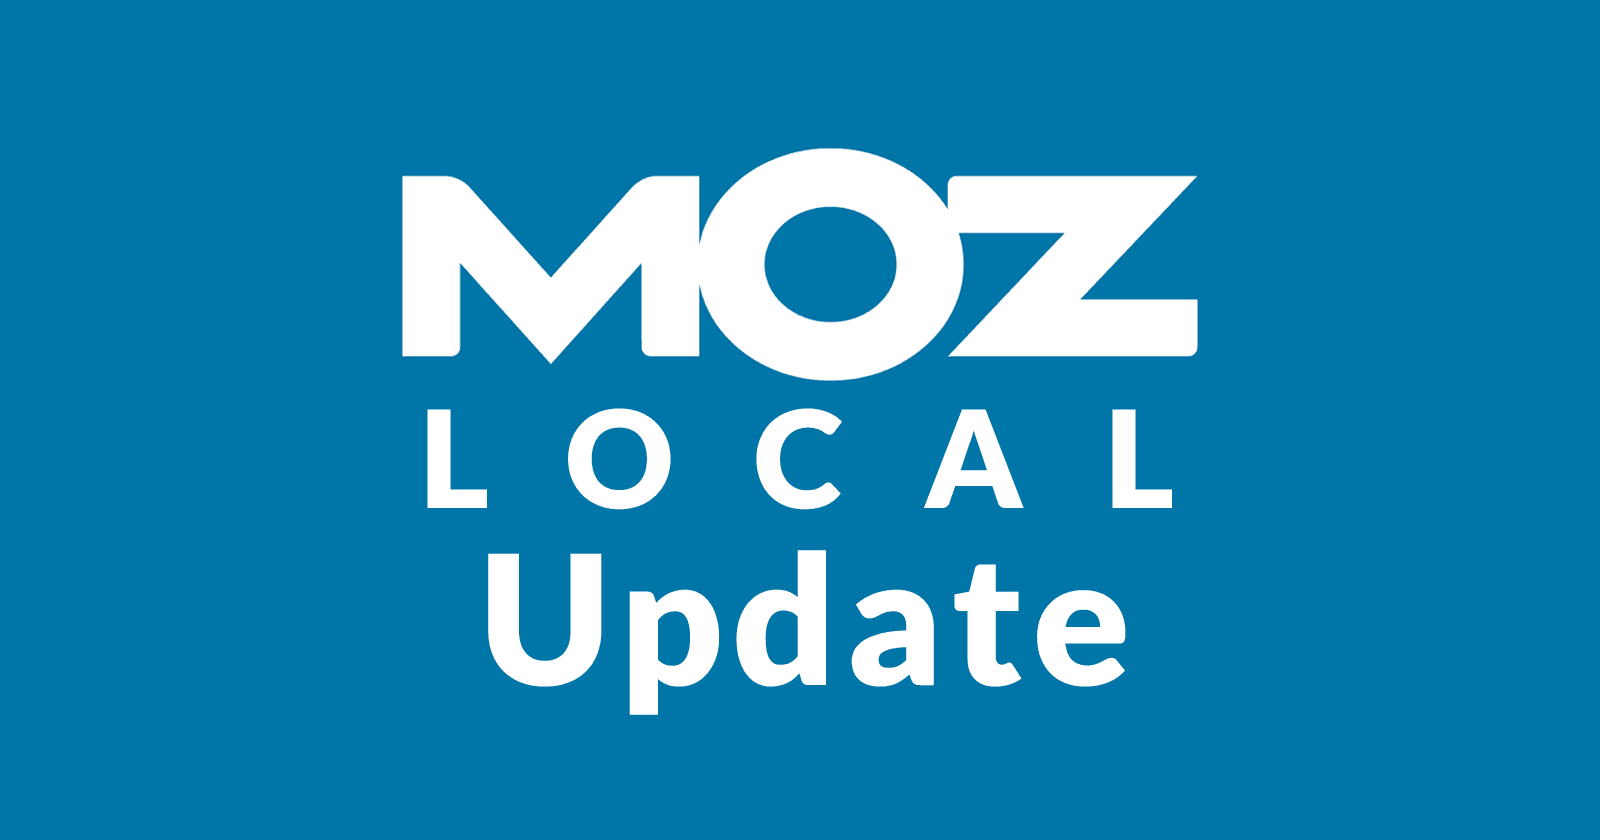 Moz Local Update